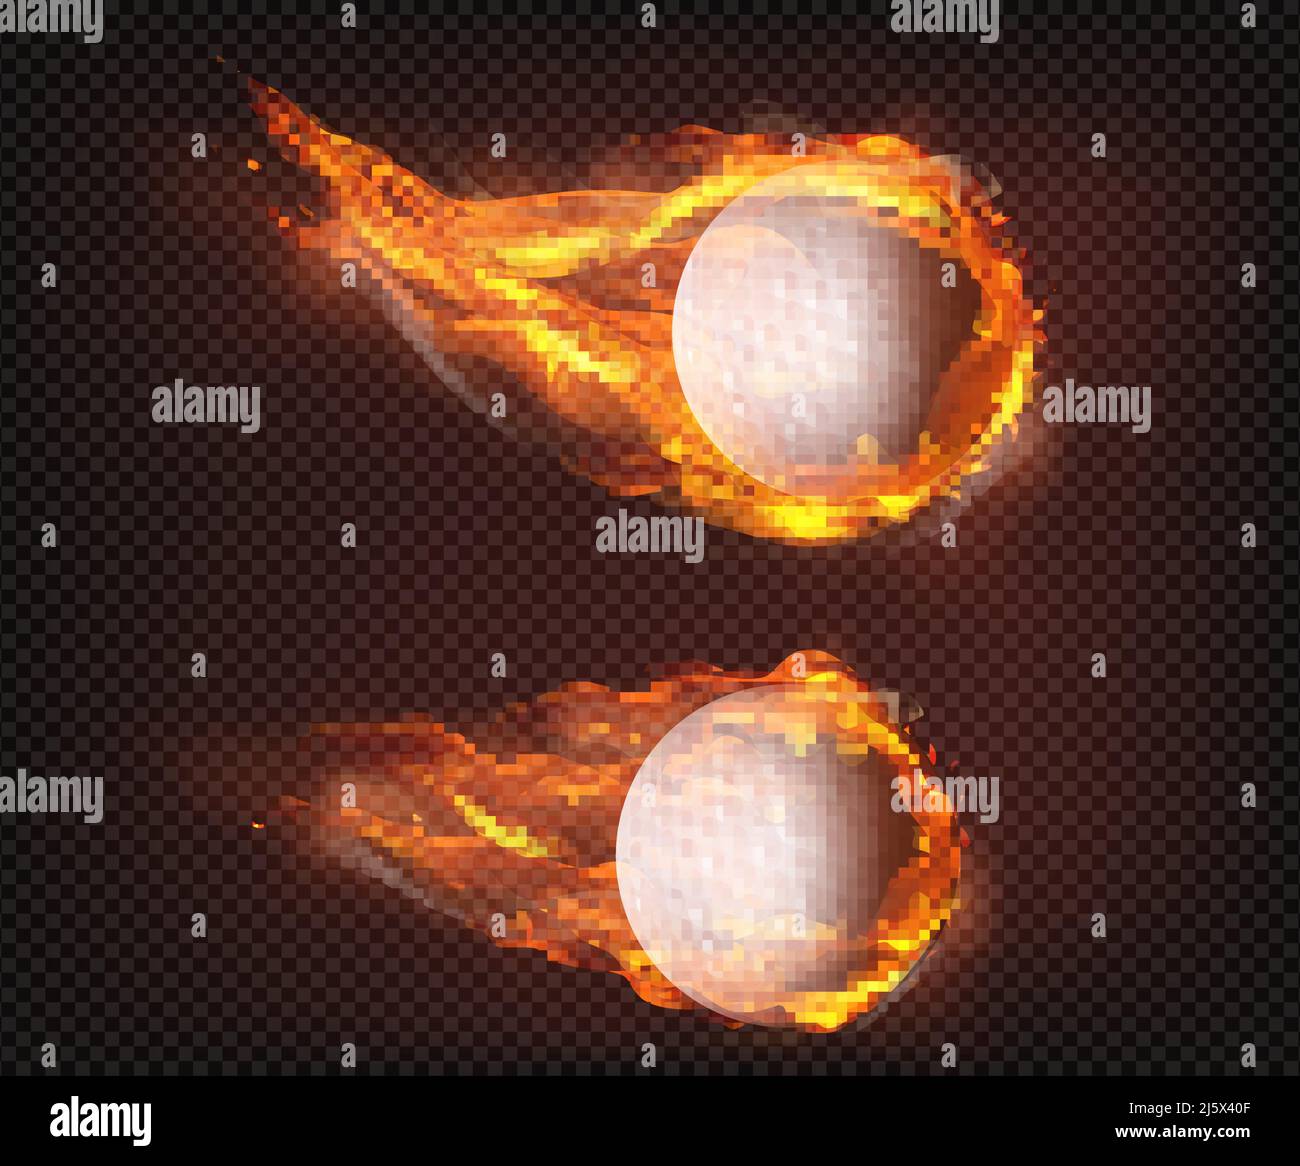 Due palline da golf surriscaldate che volano, cadendo inghiottite in fiamme, sparando in aria, isolate 3D illustrazioni vettoriali realistiche. Logo del club sportivo, attrezzature Illustrazione Vettoriale